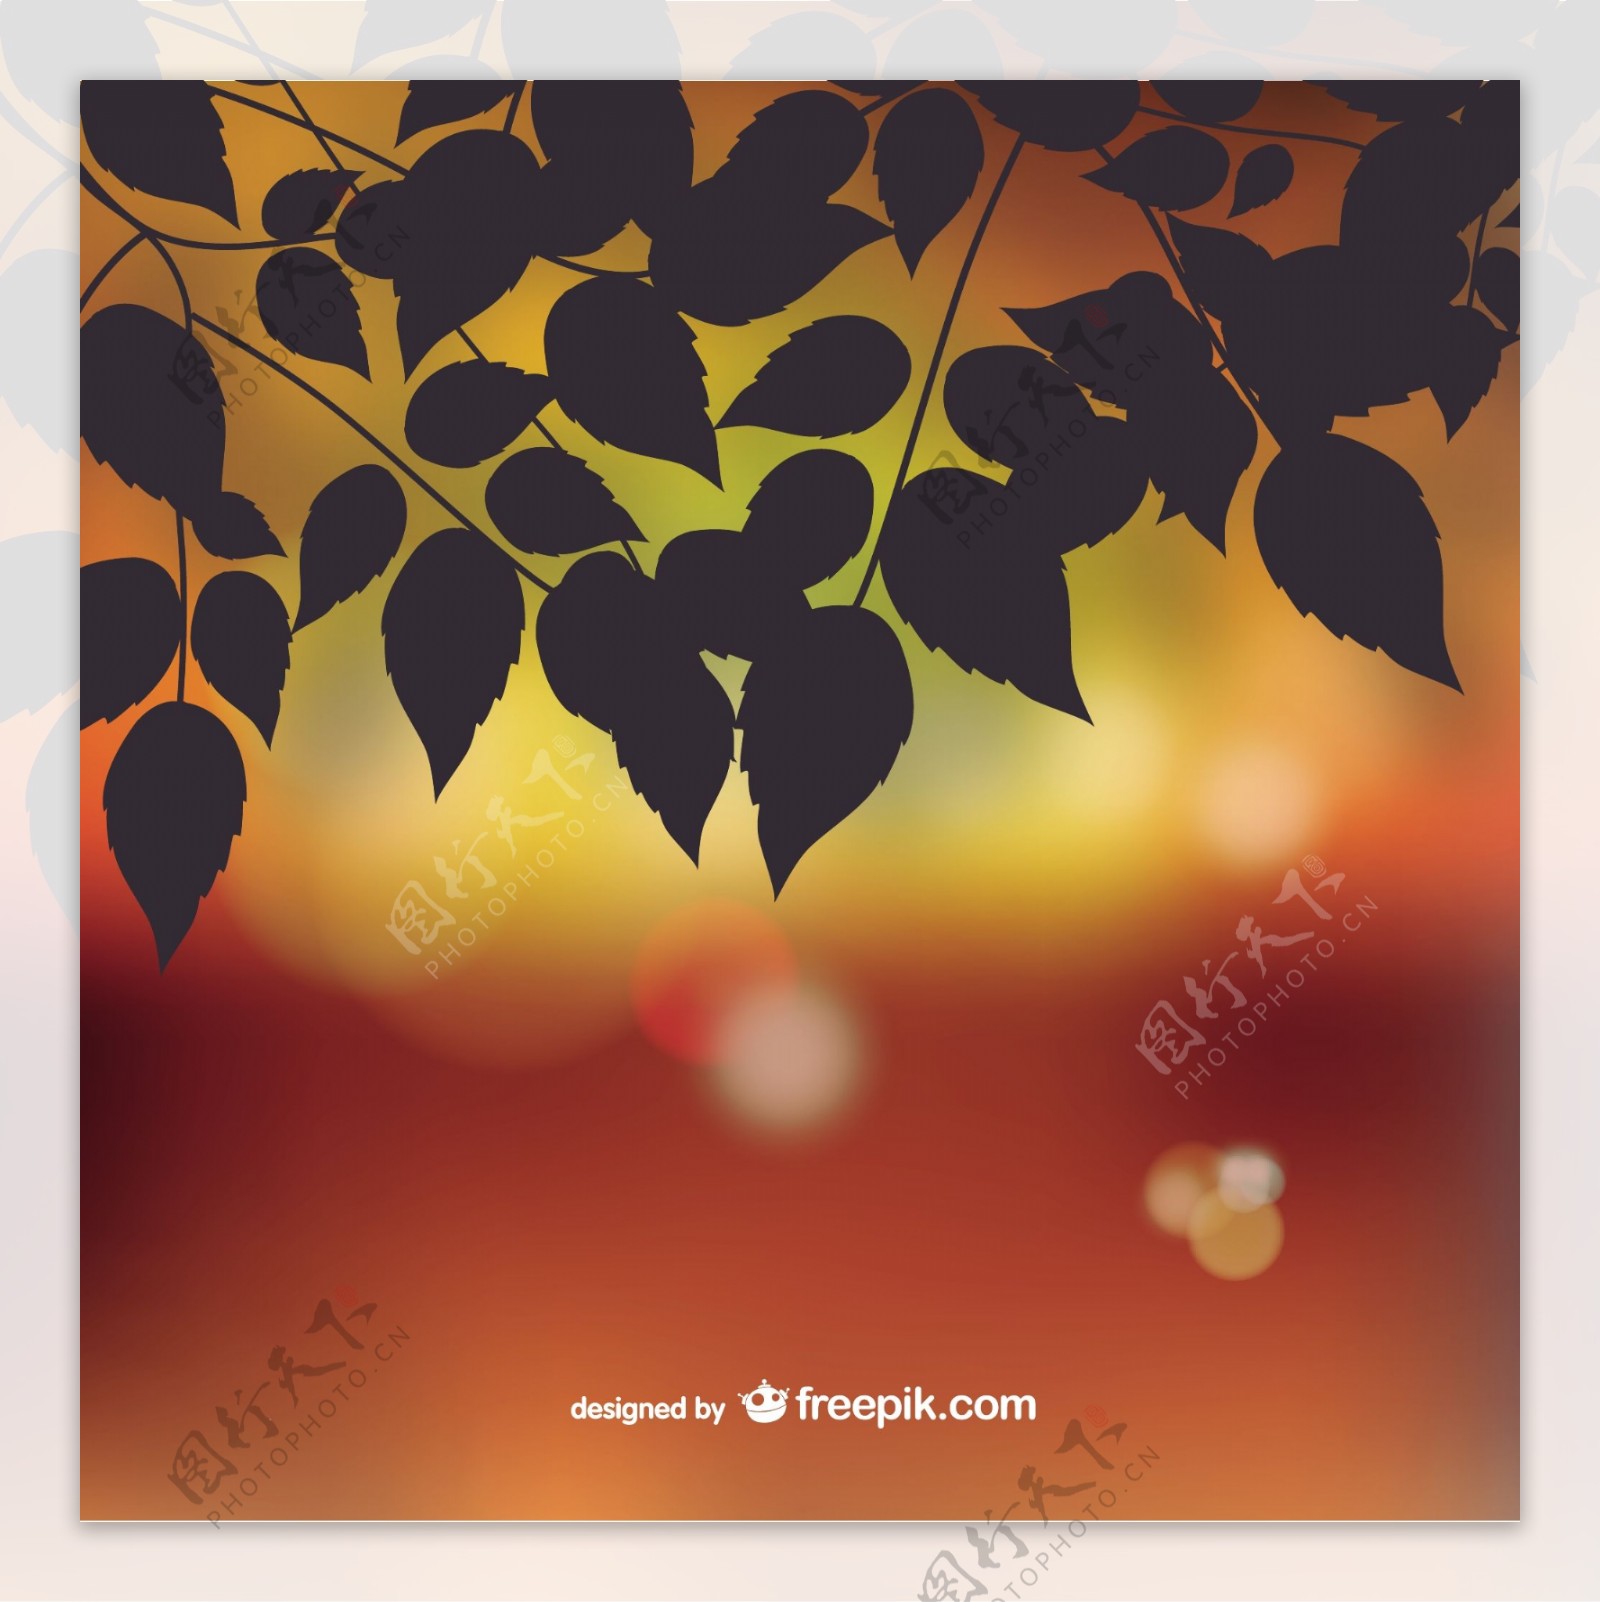 秋天树叶的背景虚化背景的剪影